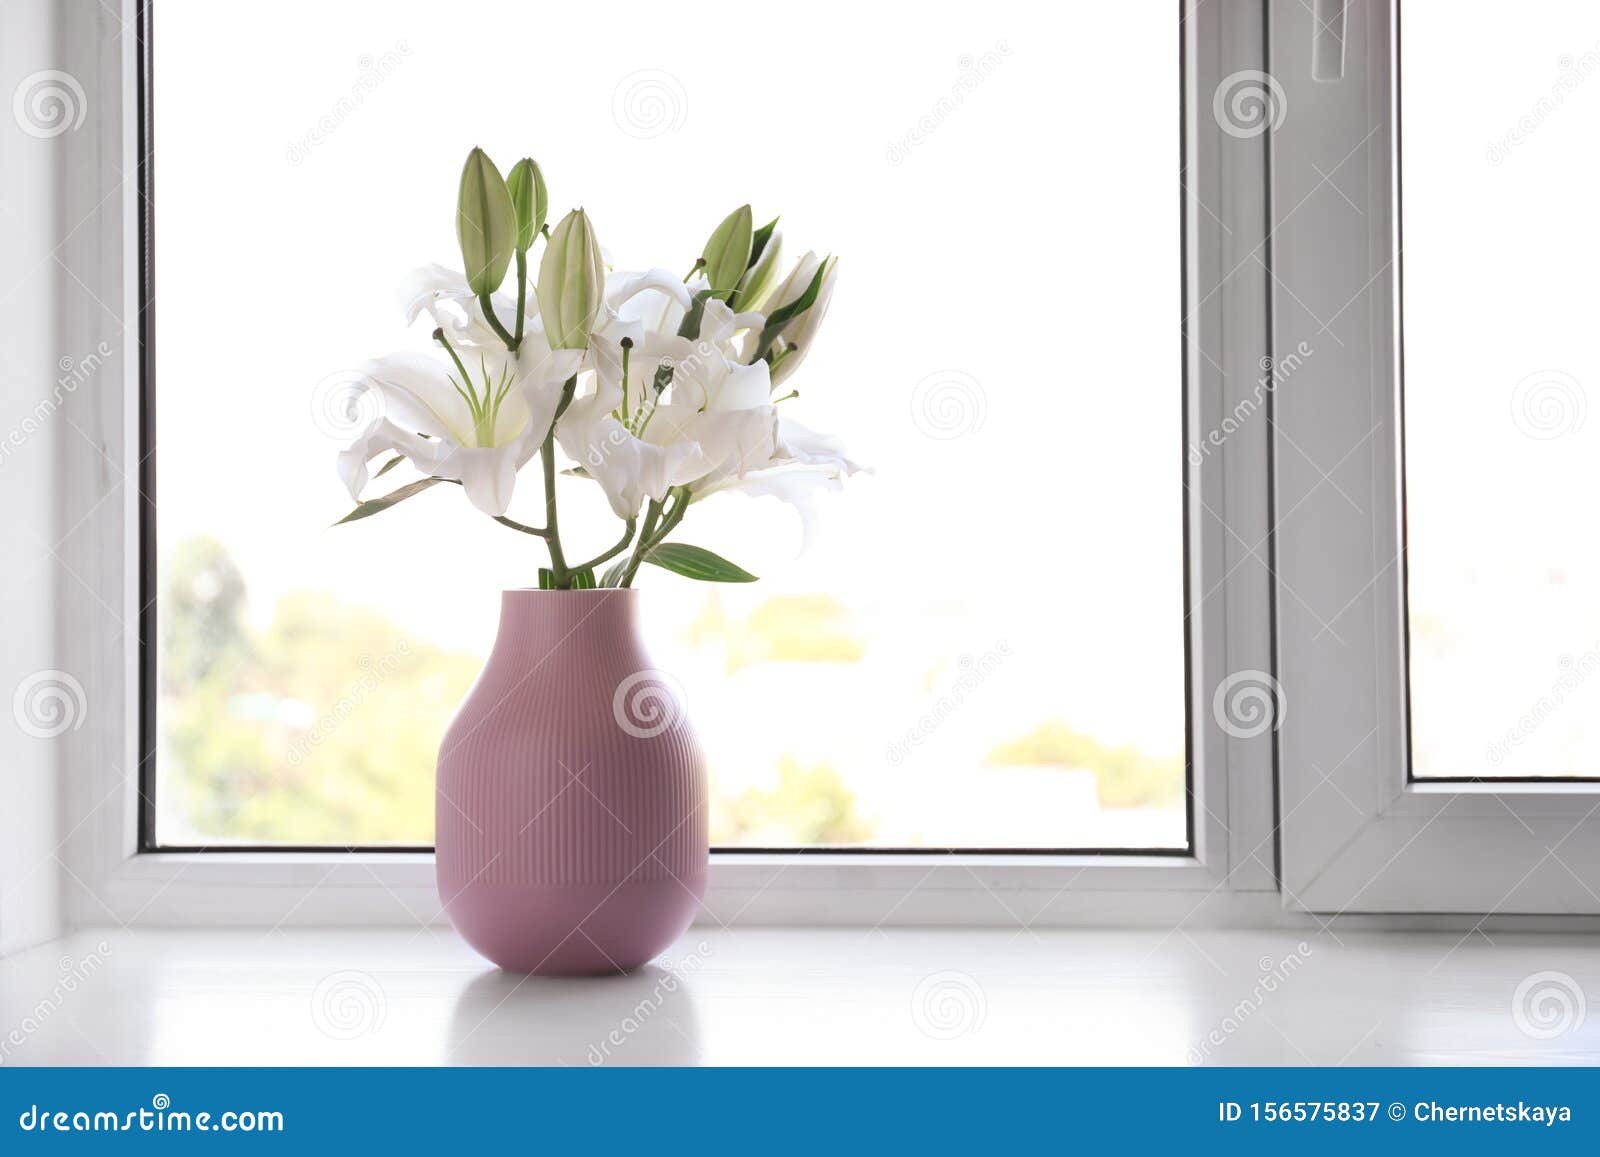 室内窗台上美丽百合花的花瓶库存图片 图片包括有植物群 葬礼 对象 绽放 死亡 本质 花卉